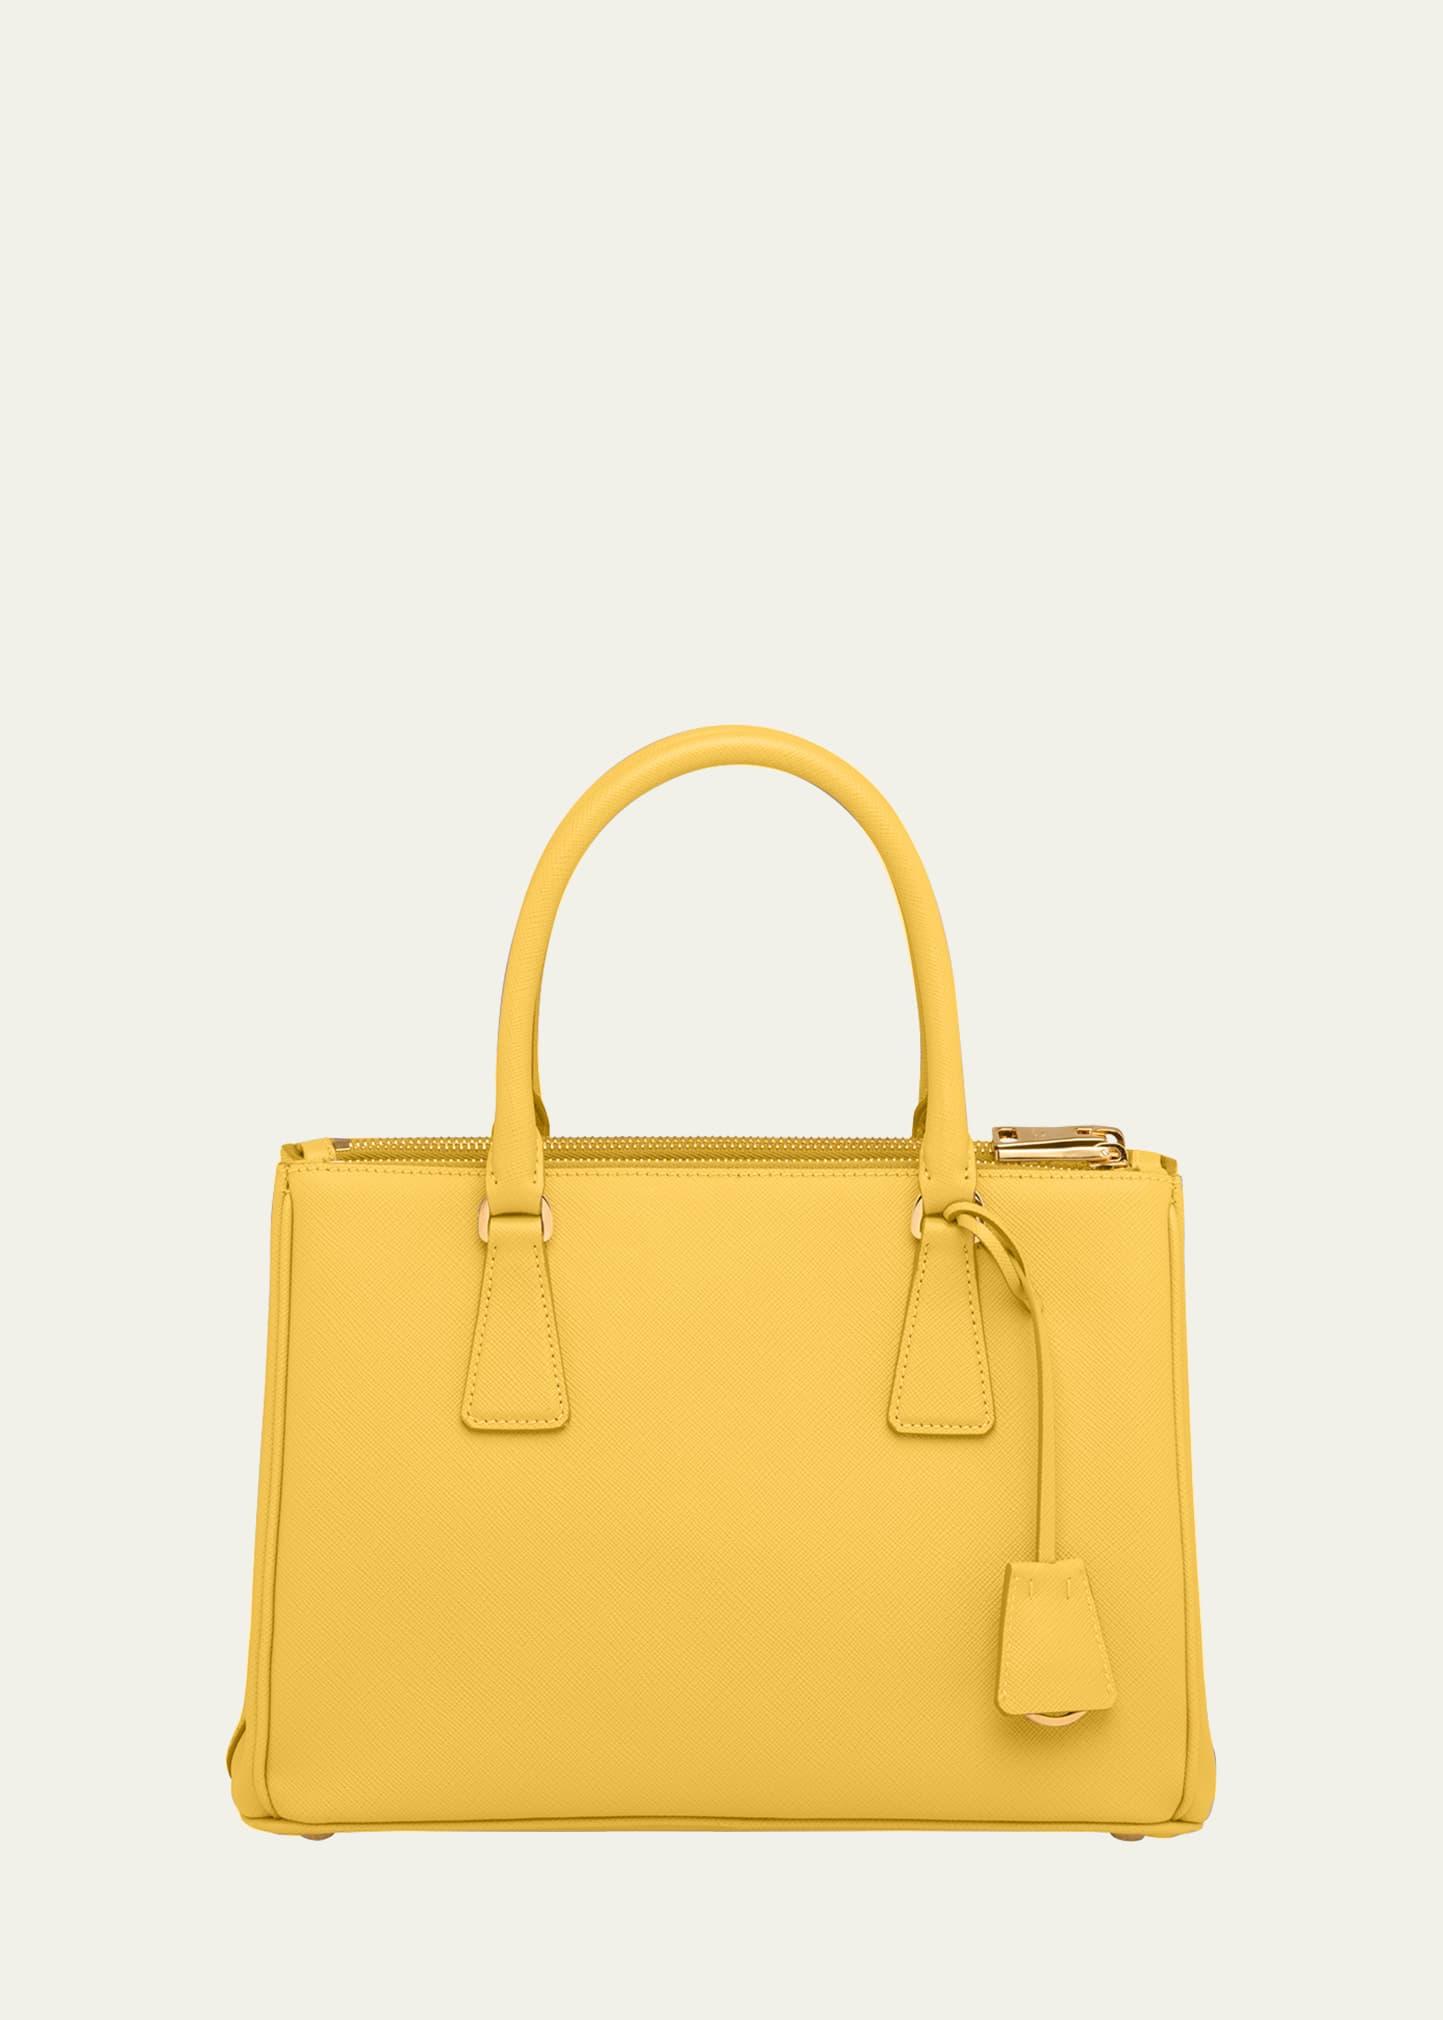 Prada Saffiano Leather Mini Bag in Yellow